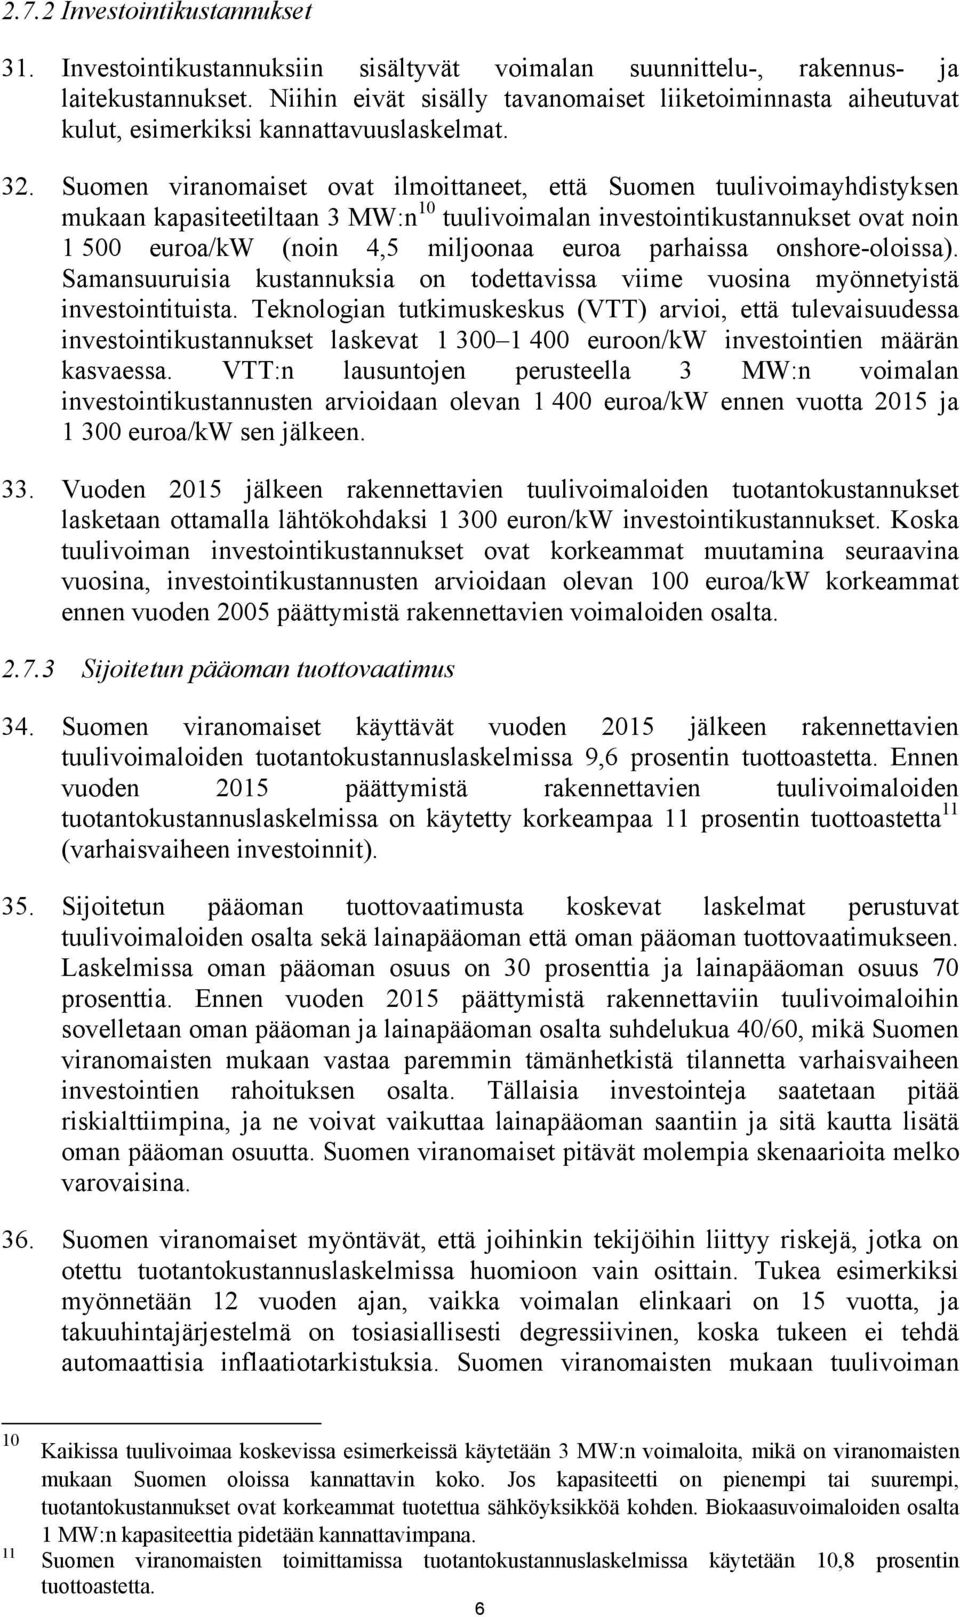 Suomen viranomaiset ovat ilmoittaneet, että Suomen tuulivoimayhdistyksen mukaan kapasiteetiltaan 3 MW:n 10 tuulivoimalan investointikustannukset ovat noin 1 500 euroa/kw (noin 4,5 miljoonaa euroa